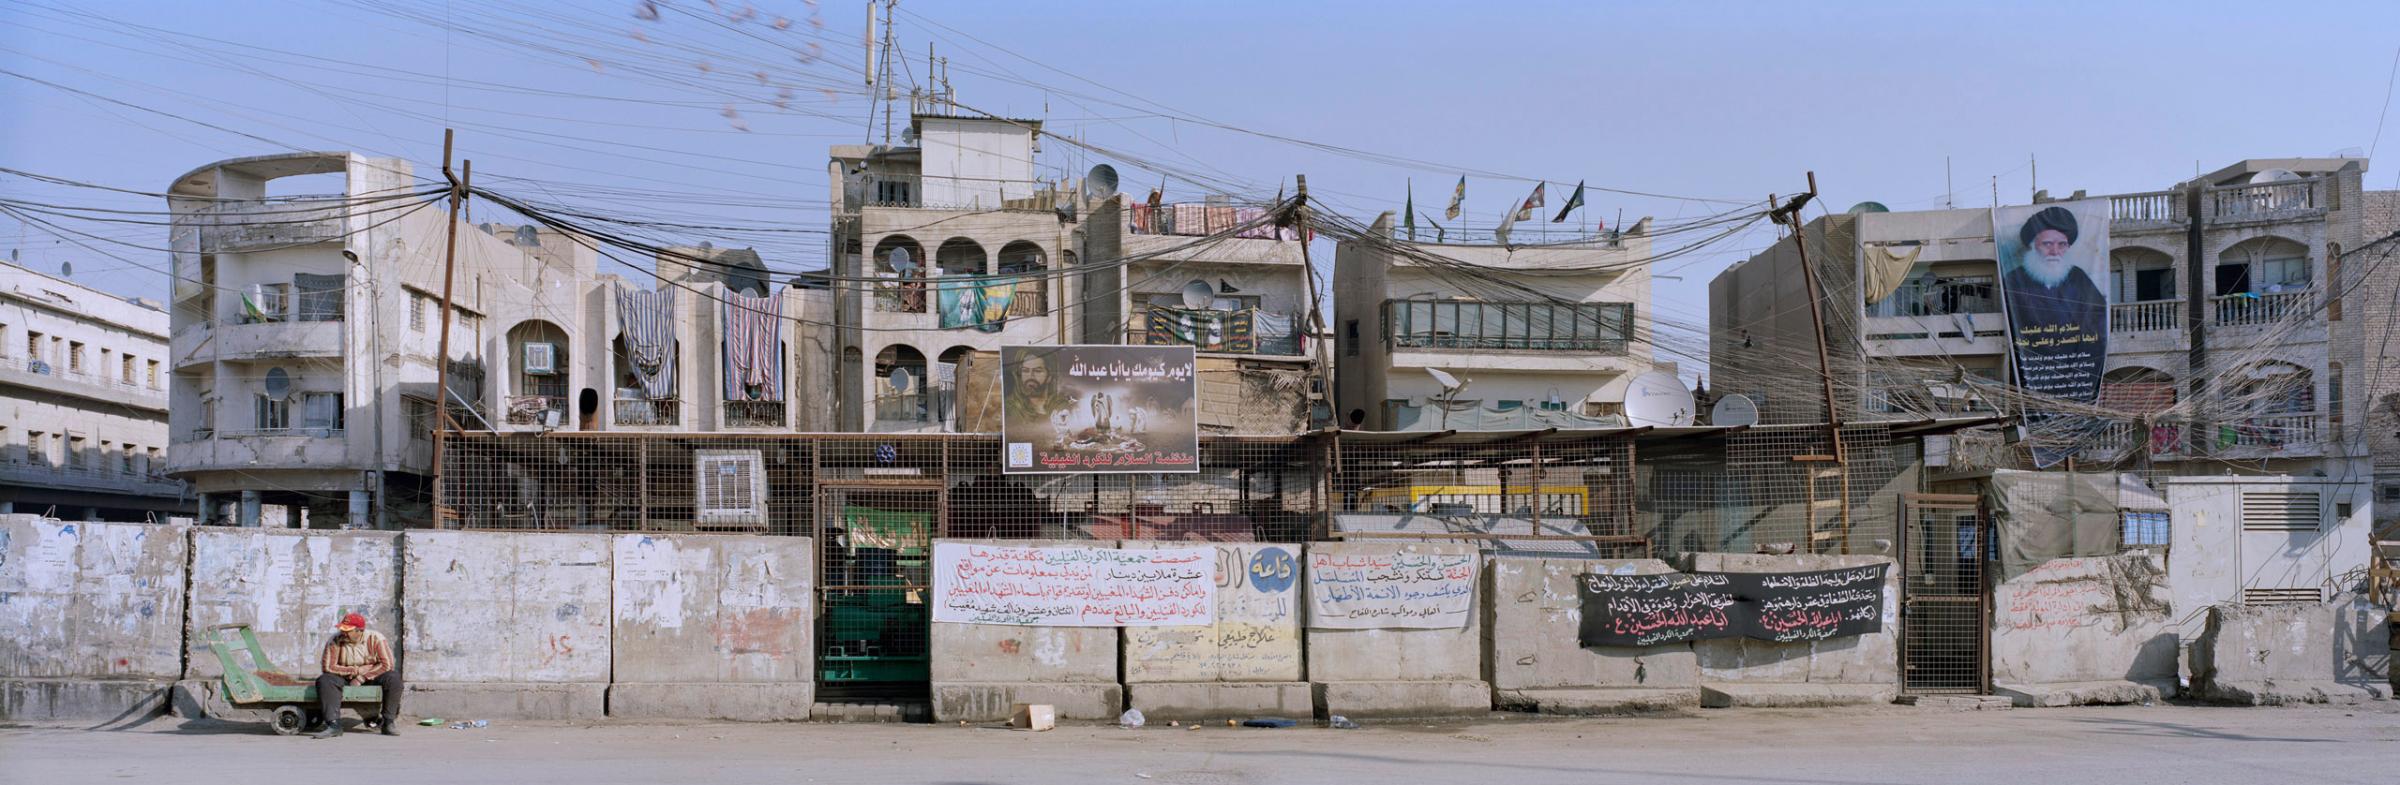 Shorja Market, Baghdad. Iraq, 2012.